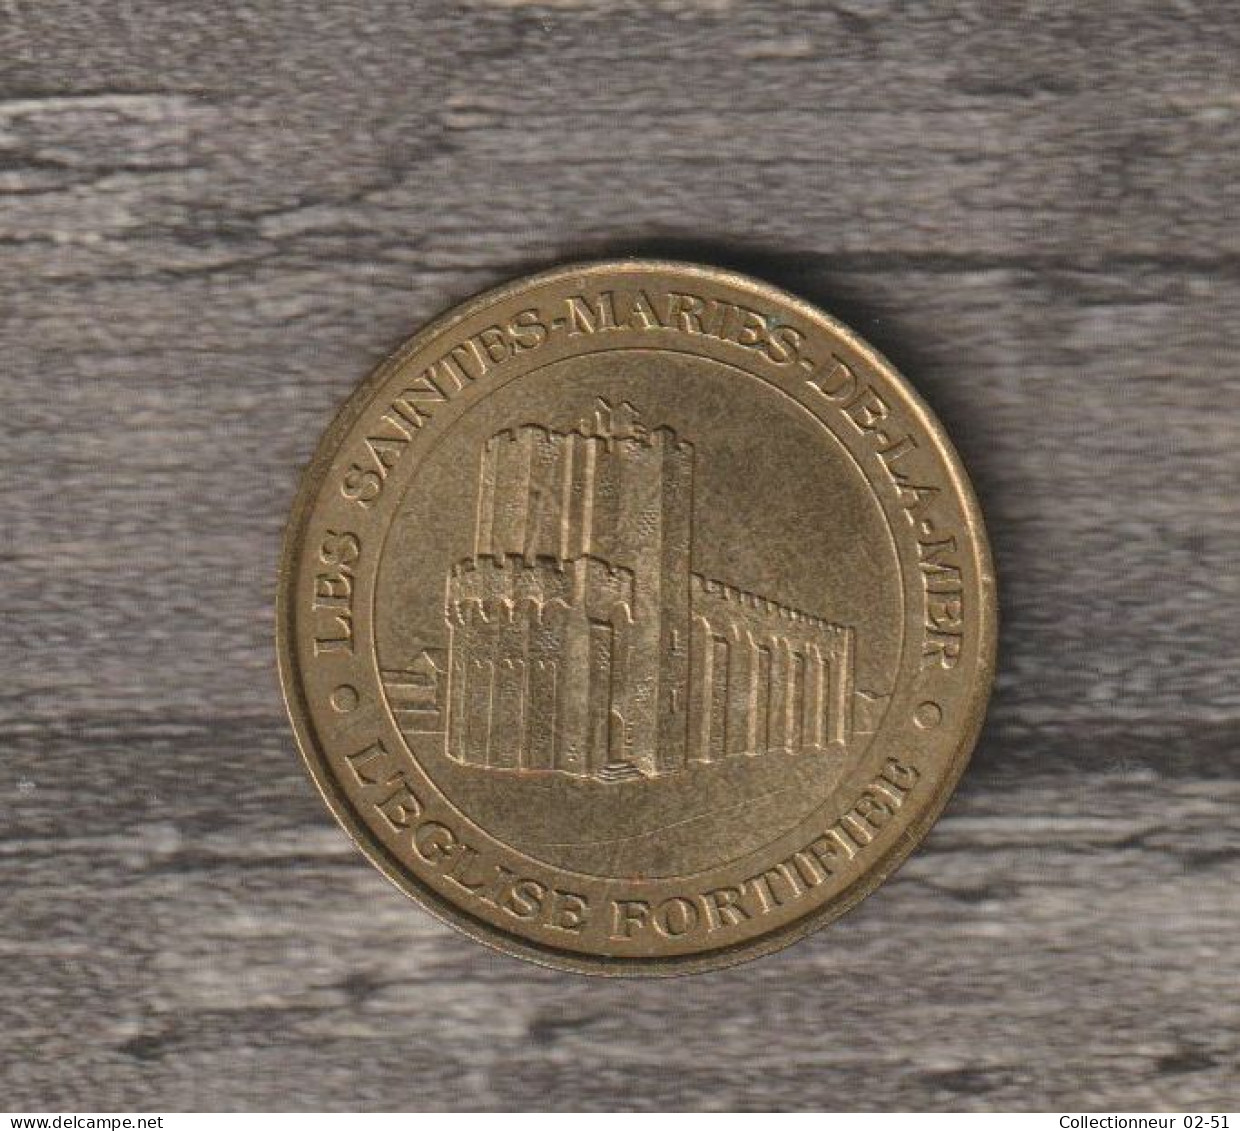 Monnaie De Paris : Les Saintes-Marie-de-la-mer (l'Eglise Fortifiée) - 2000 - 2000